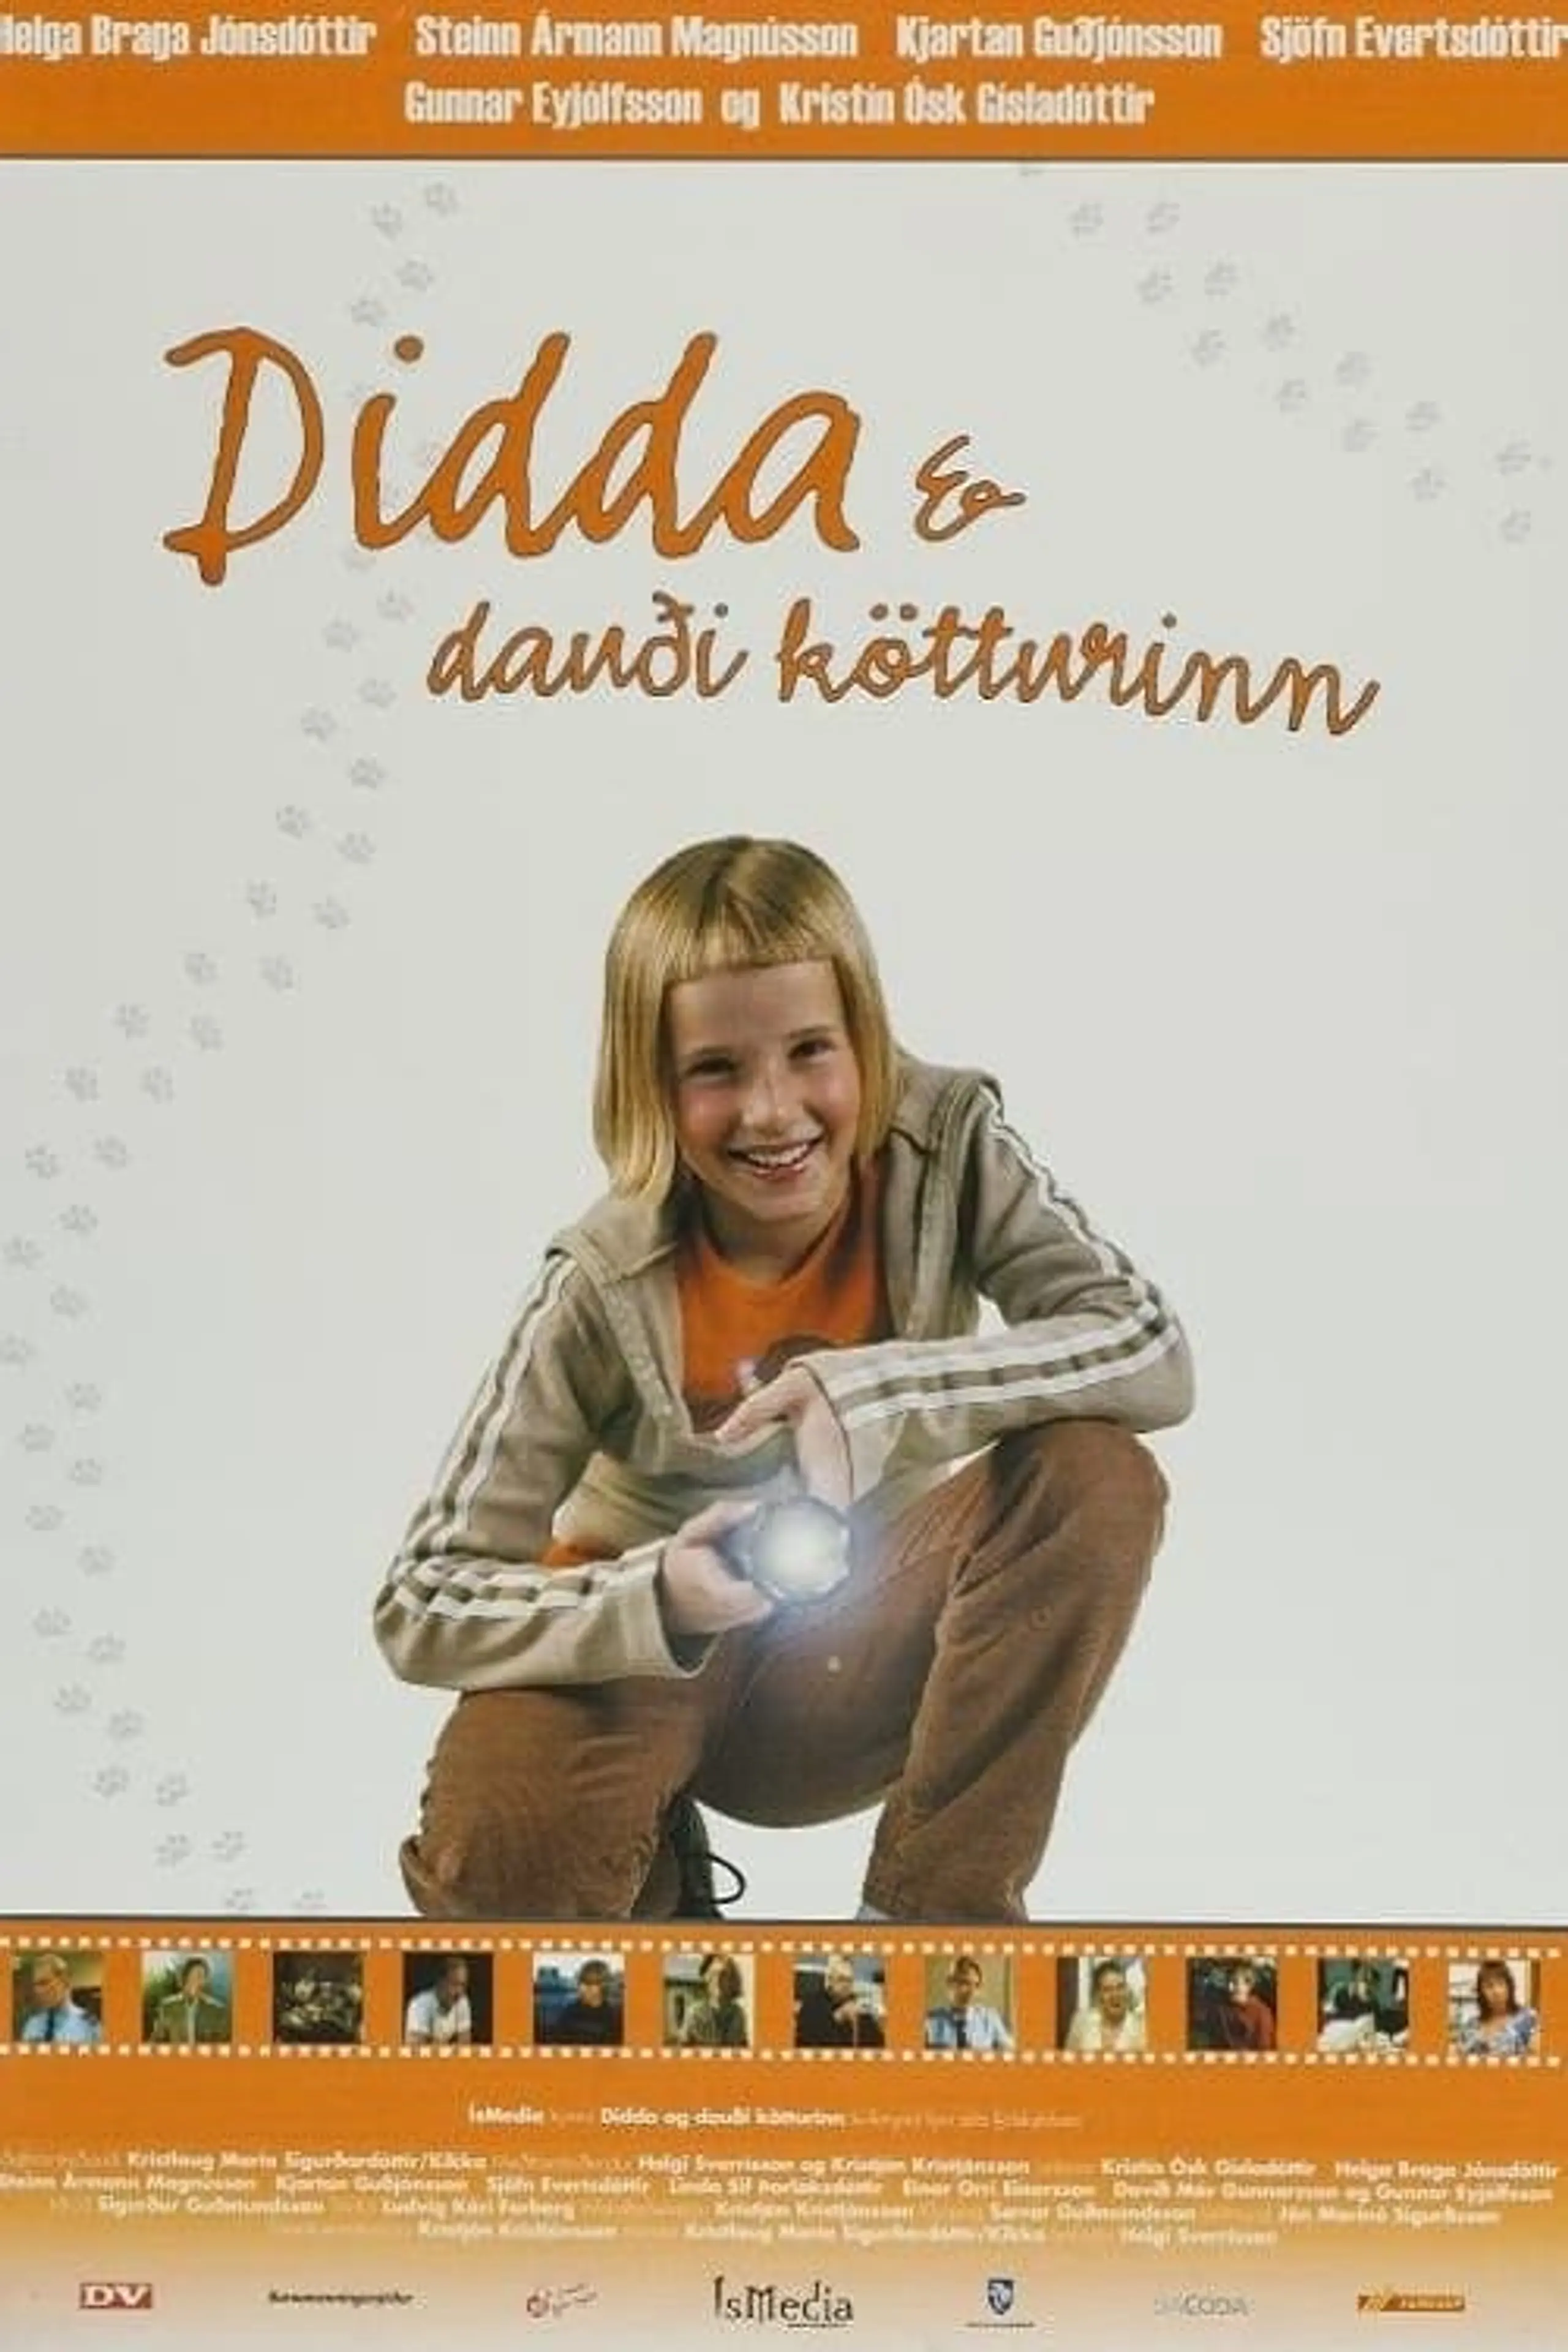 Didda & dauði kötturinn